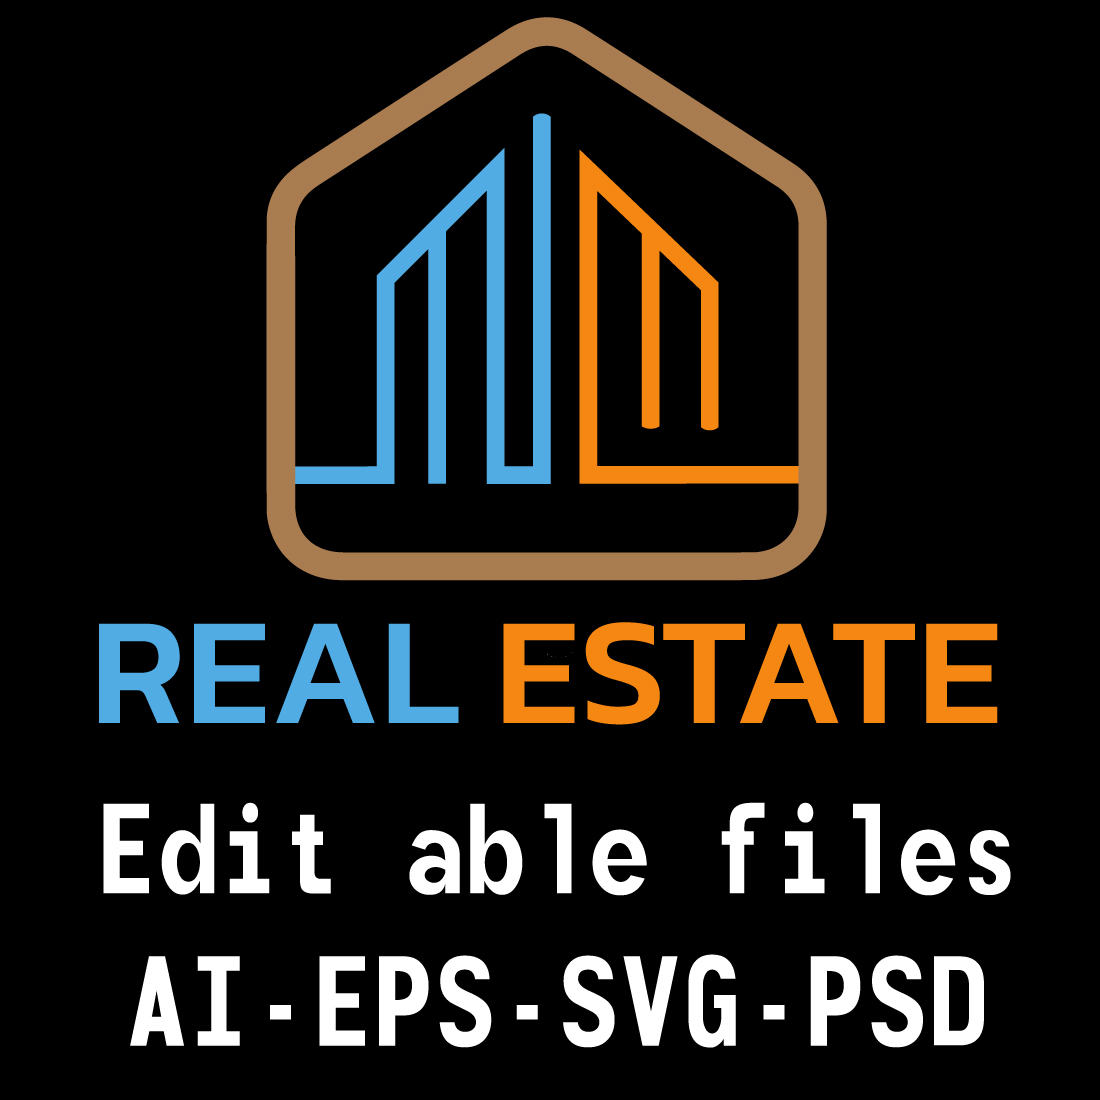 modern real estate logo design cover image.